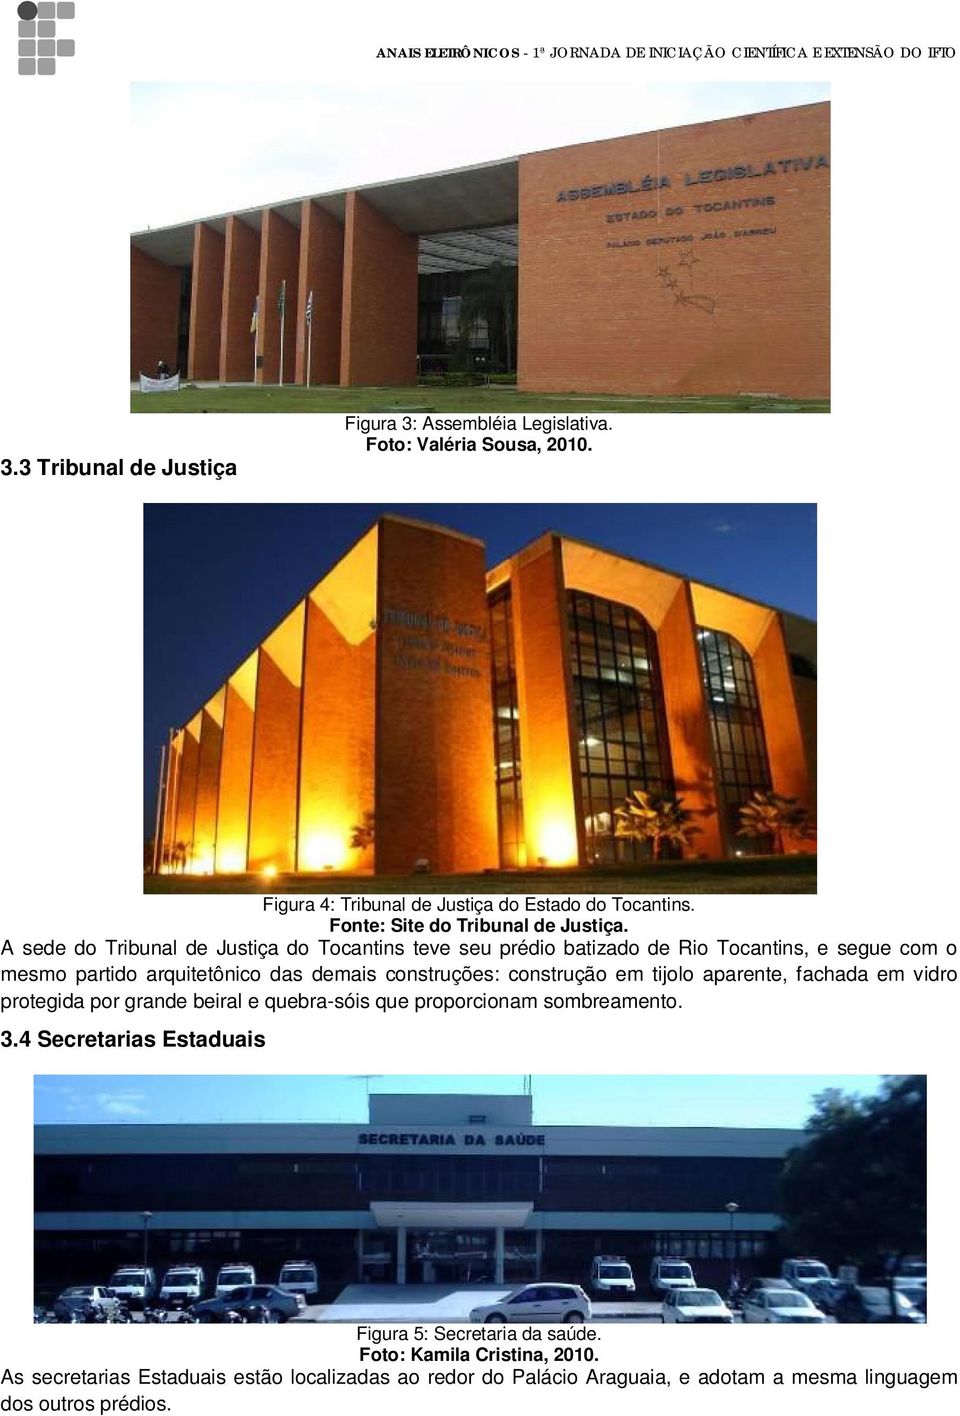 A sede do Tribunal de Justiça do Tocantins teve seu prédio batizado de Rio Tocantins, e segue com o mesmo partido arquitetônico das demais construções: